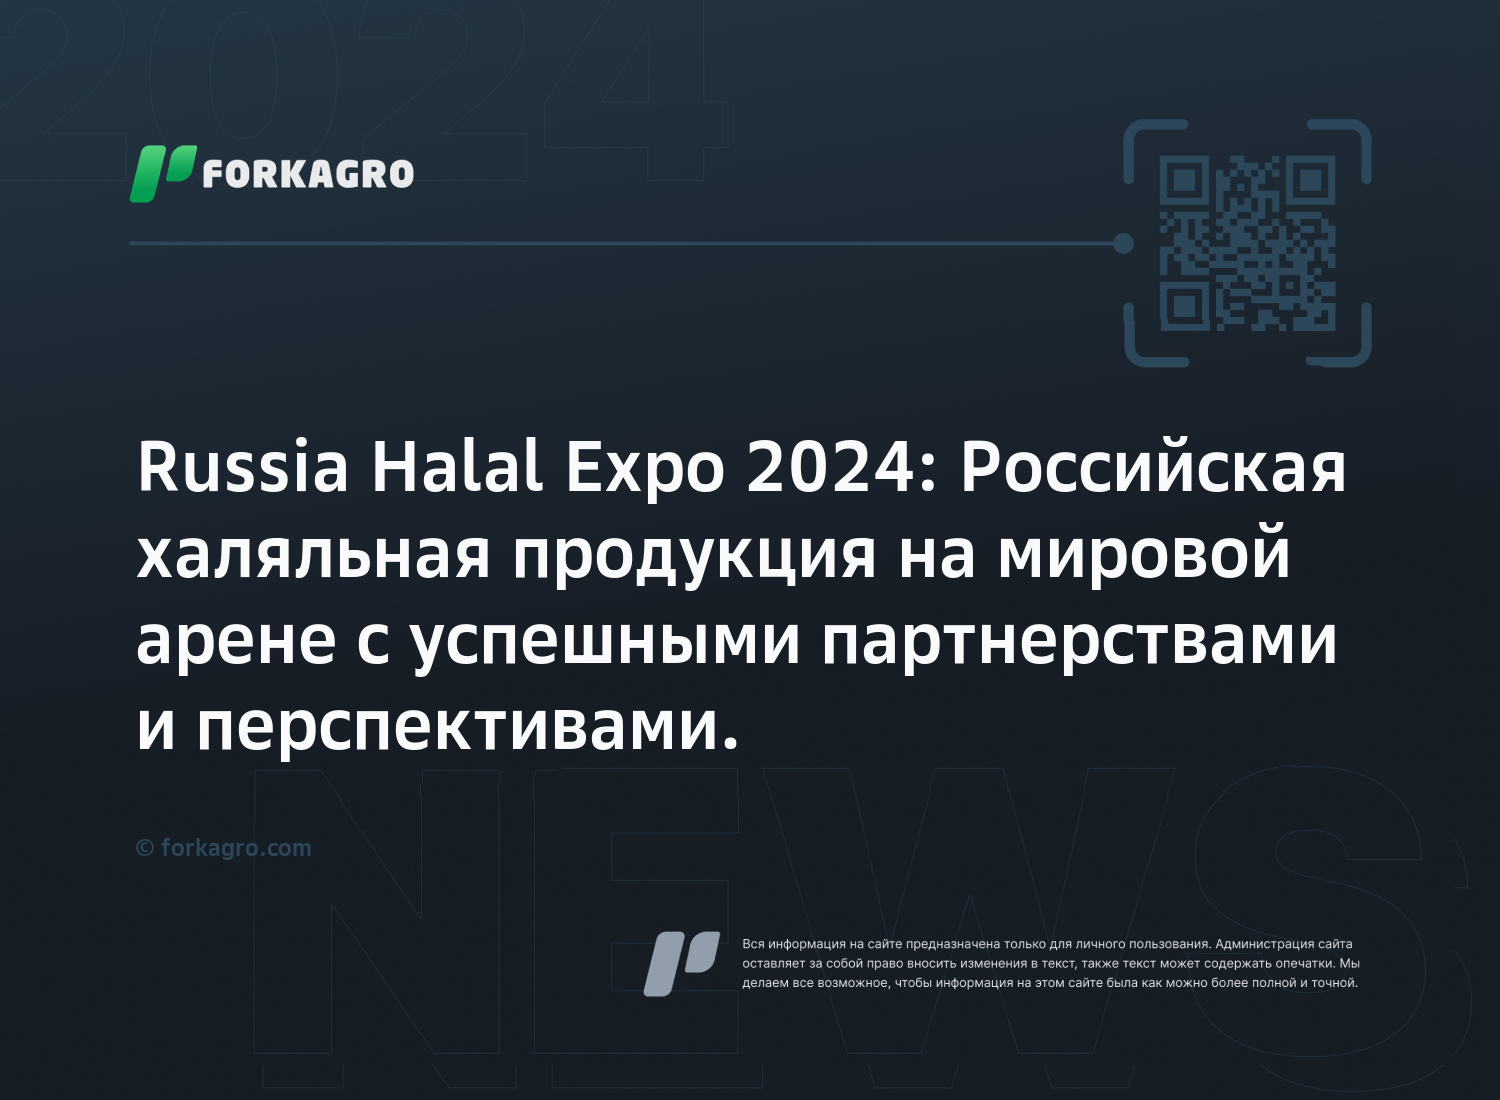 Russia Halal Expo 2024: Российская халяльная продукция на мировой арене с успешными партнерствами и перспективами.